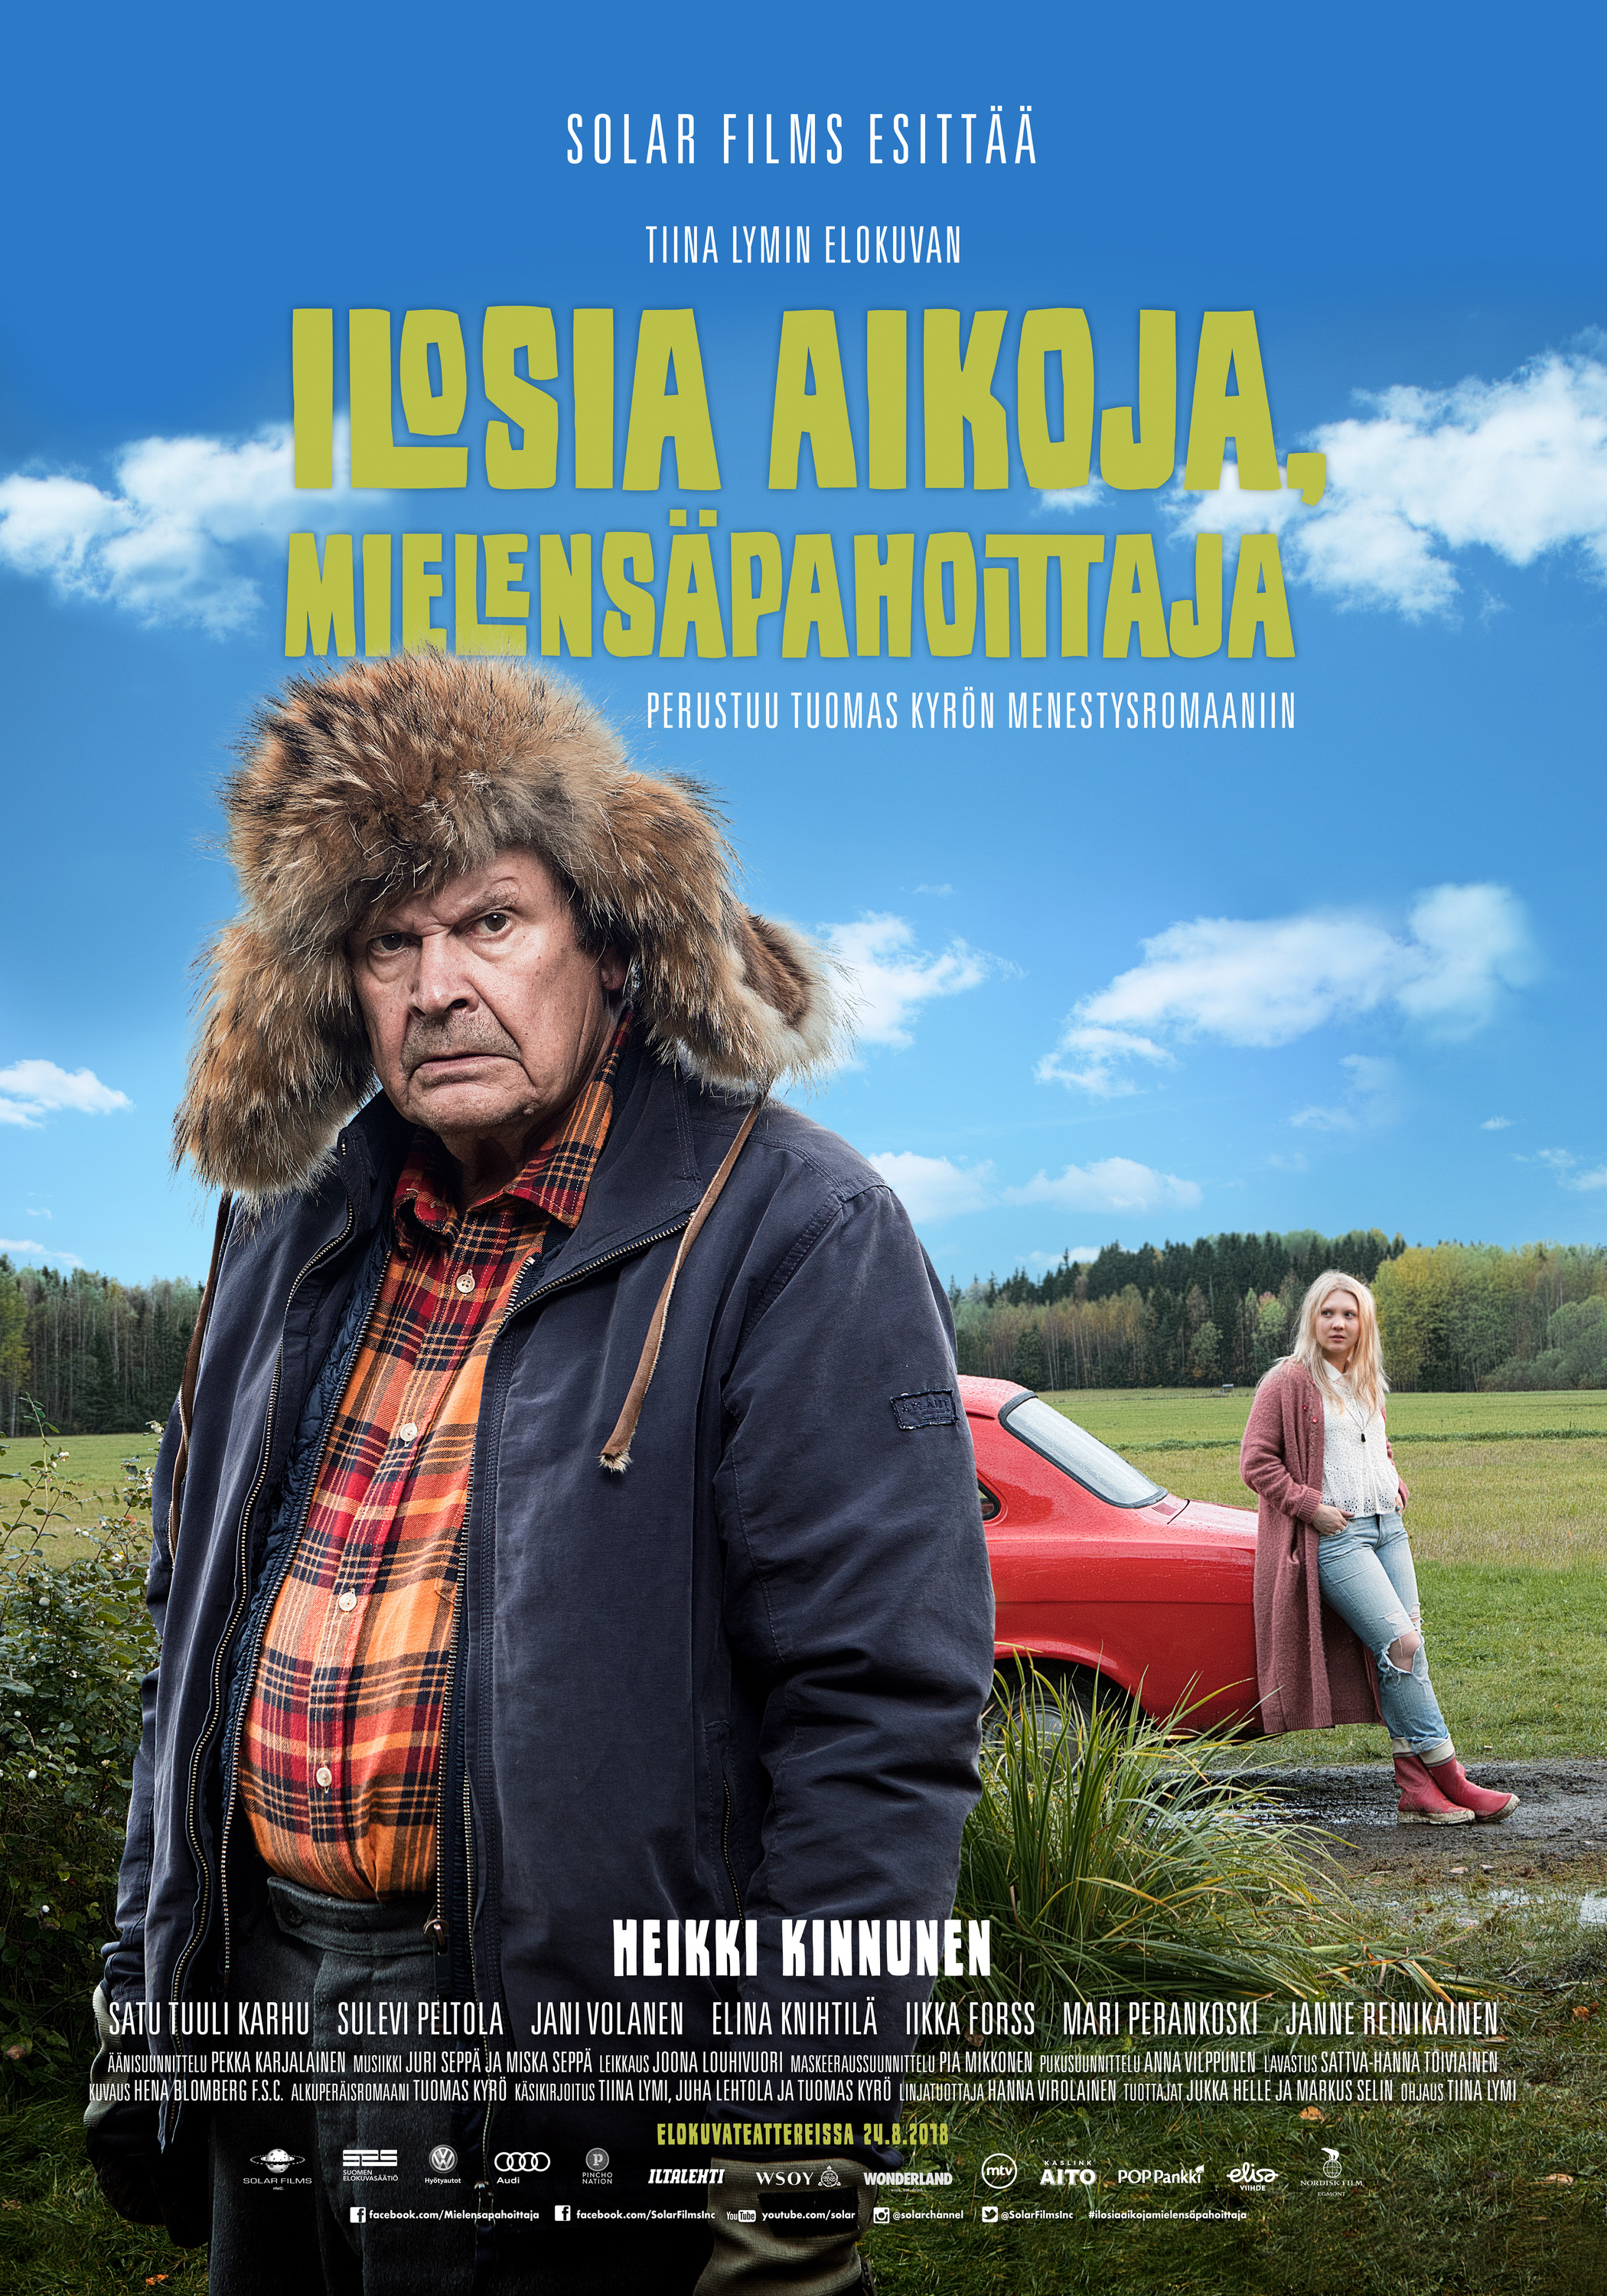 Mega Sized Movie Poster Image for Ilosia aikoja, Mielensäpahoittaja (#2 of 2)